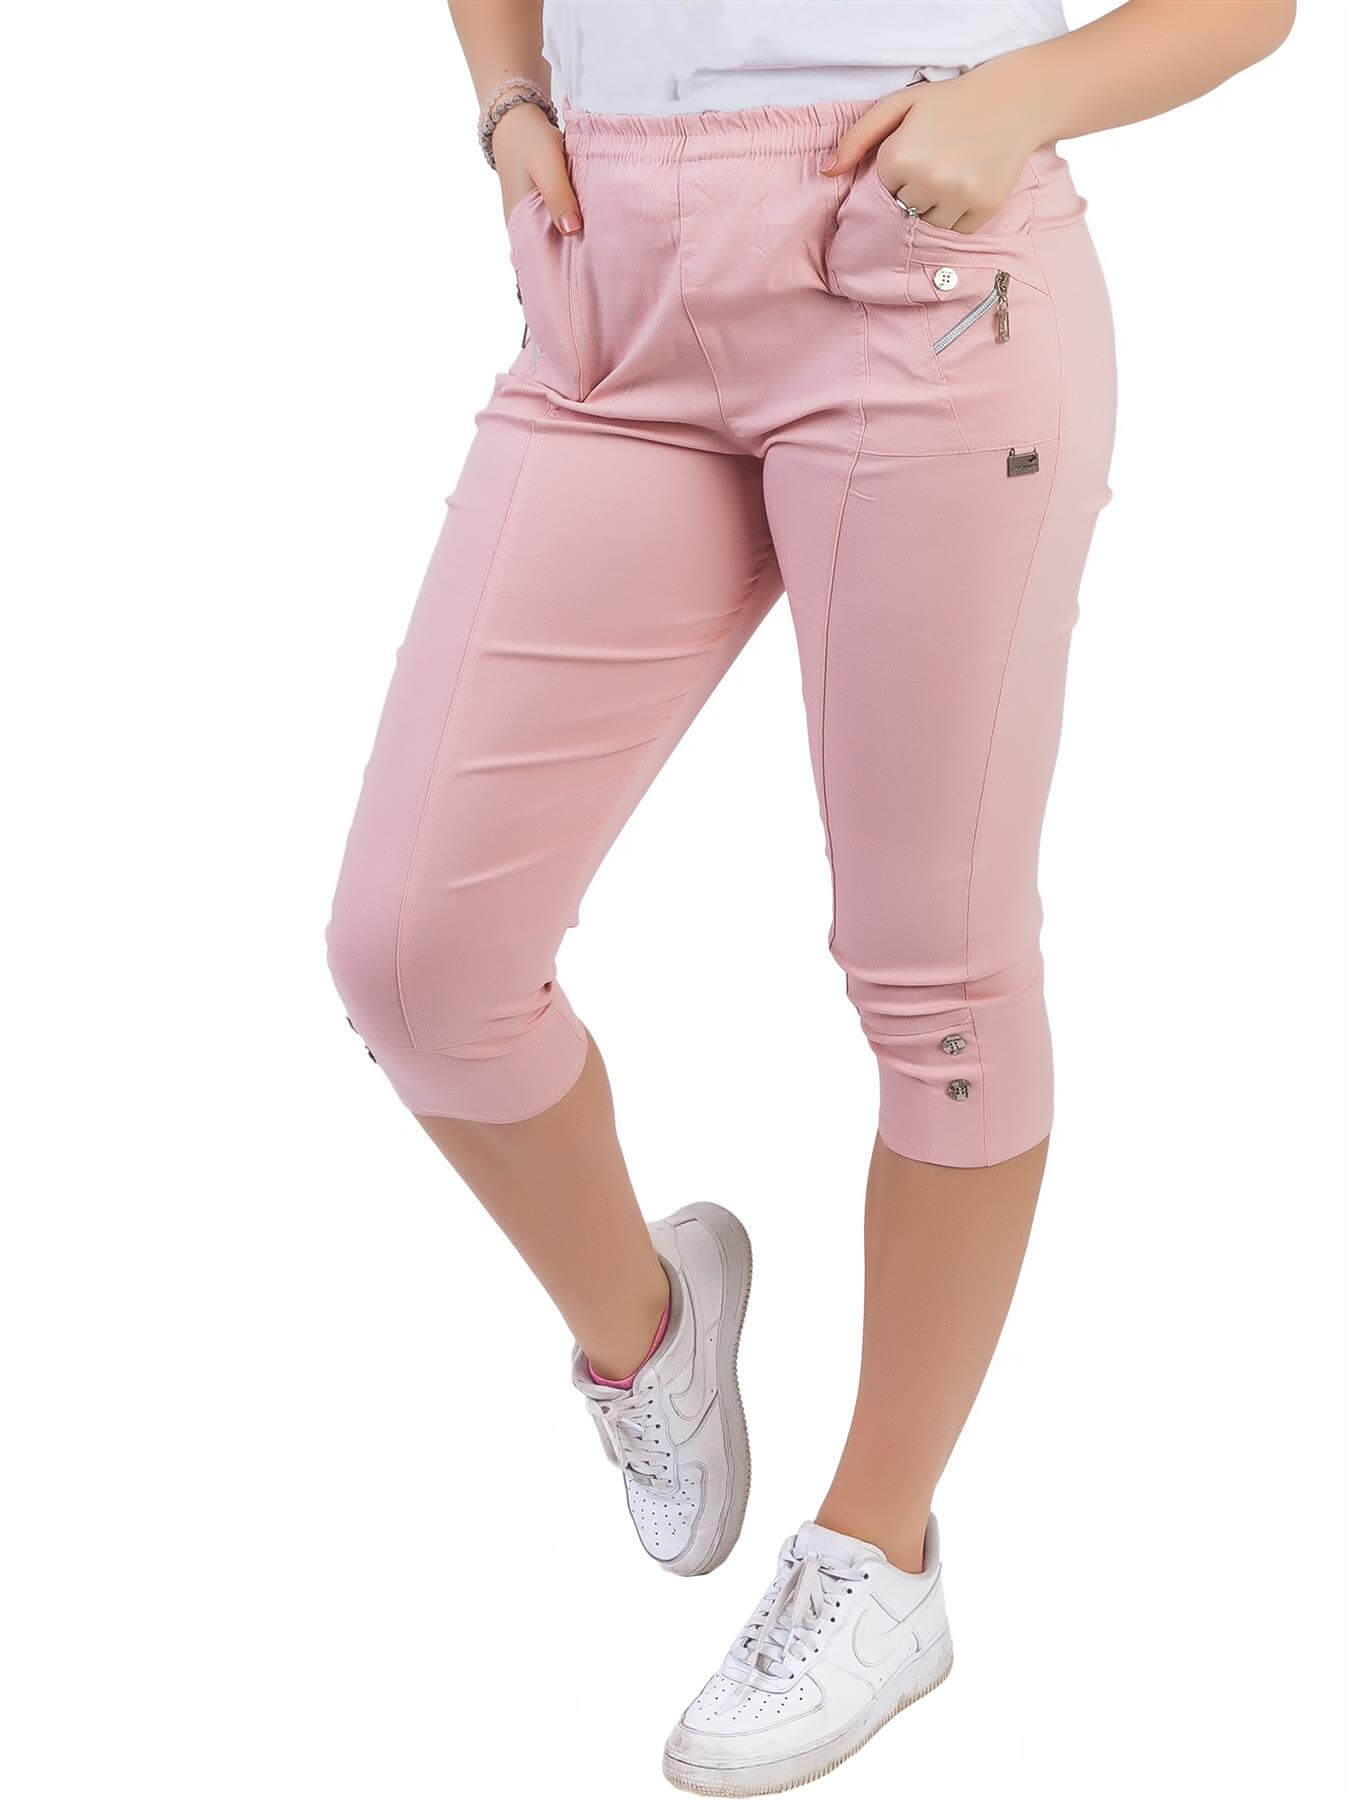 Dámské capri kalhoty bavlněné - světle růžové - vel. 40